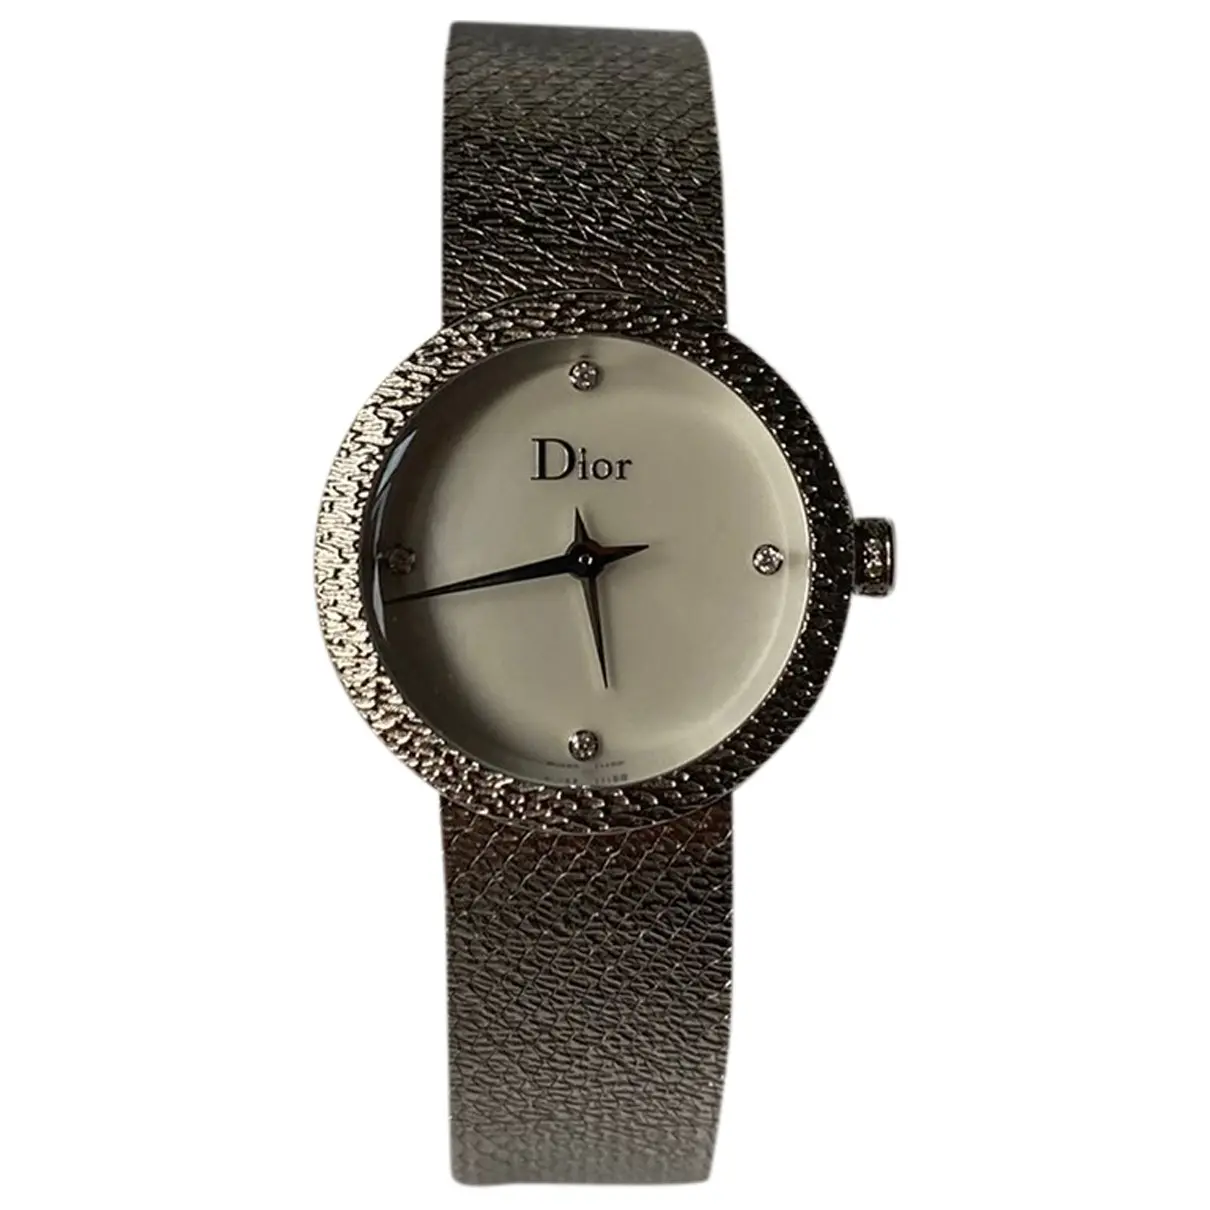 D watch Dior